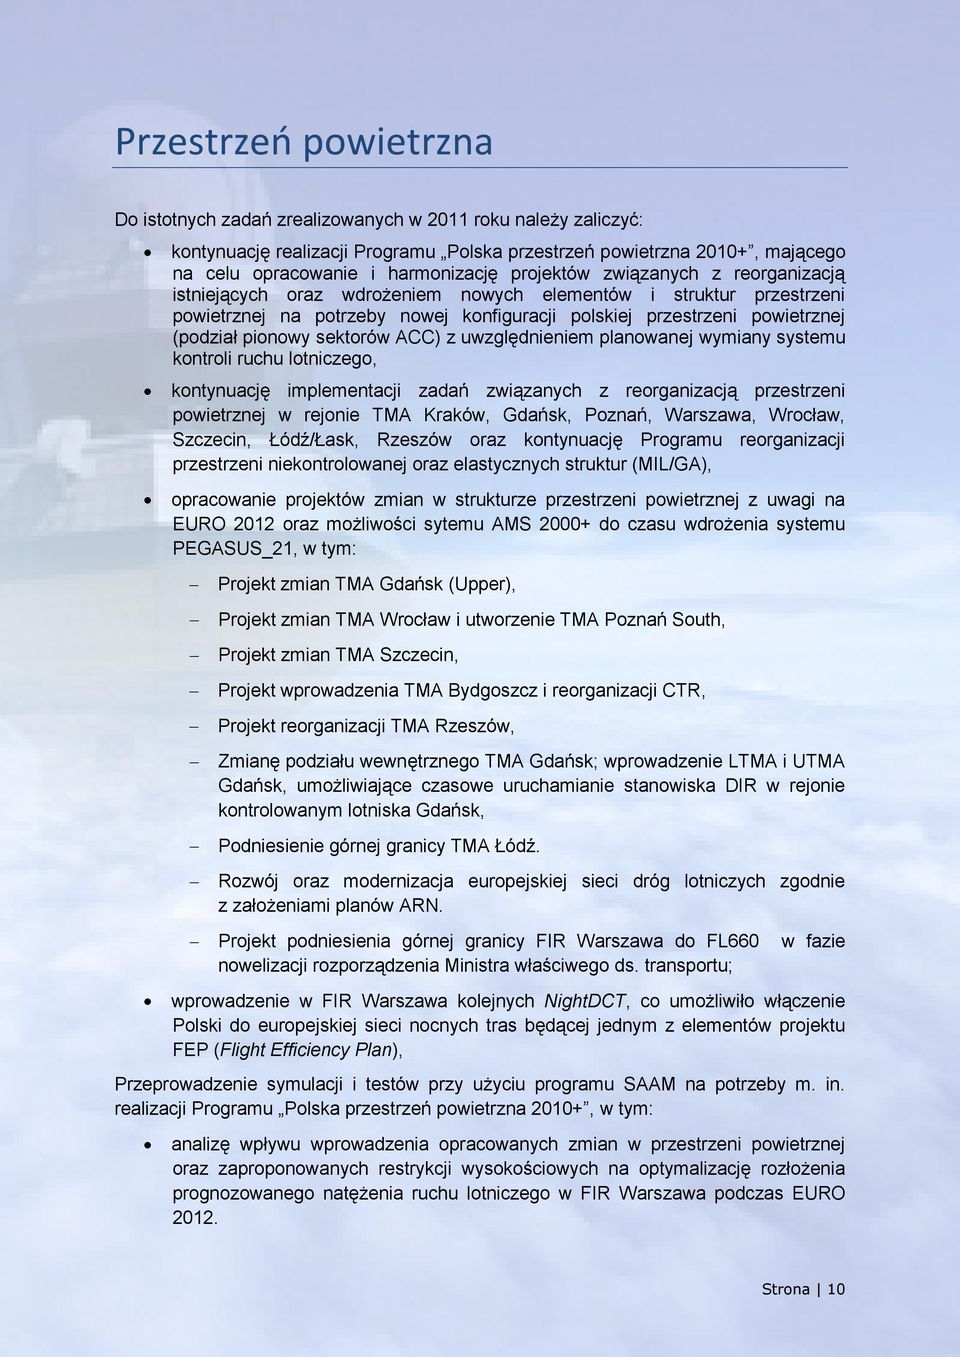 sektorów ACC) z uwzględnieniem planowanej wymiany systemu kontroli ruchu lotniczego, kontynuację implementacji zadań związanych z reorganizacją przestrzeni powietrznej w rejonie TMA Kraków, Gdańsk,